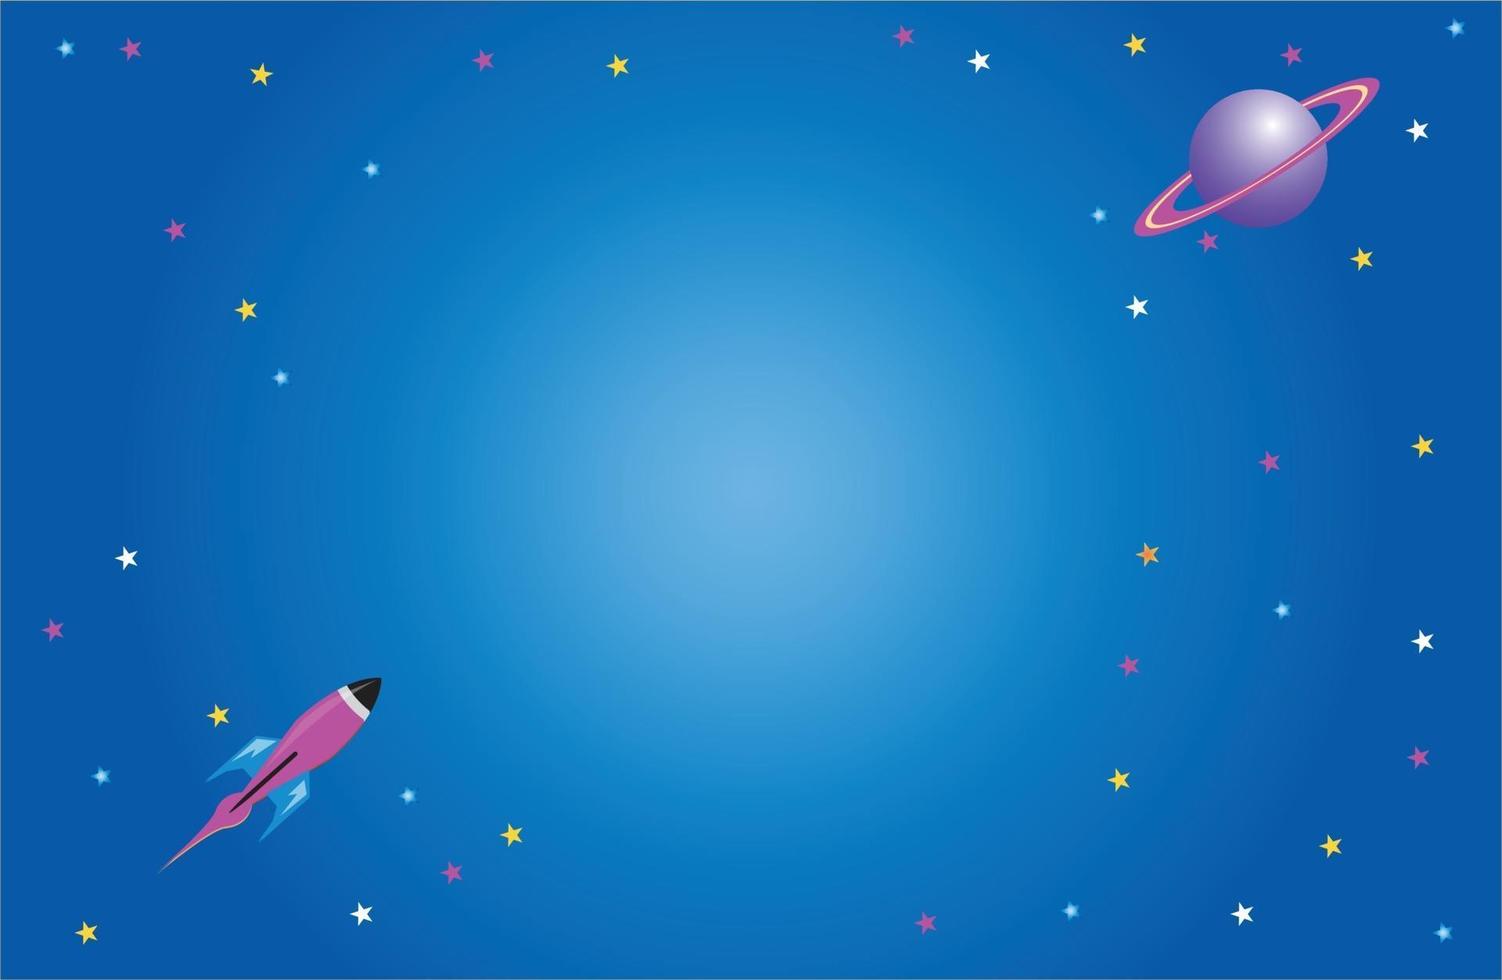 Rocket planet on galaxy illustration vector